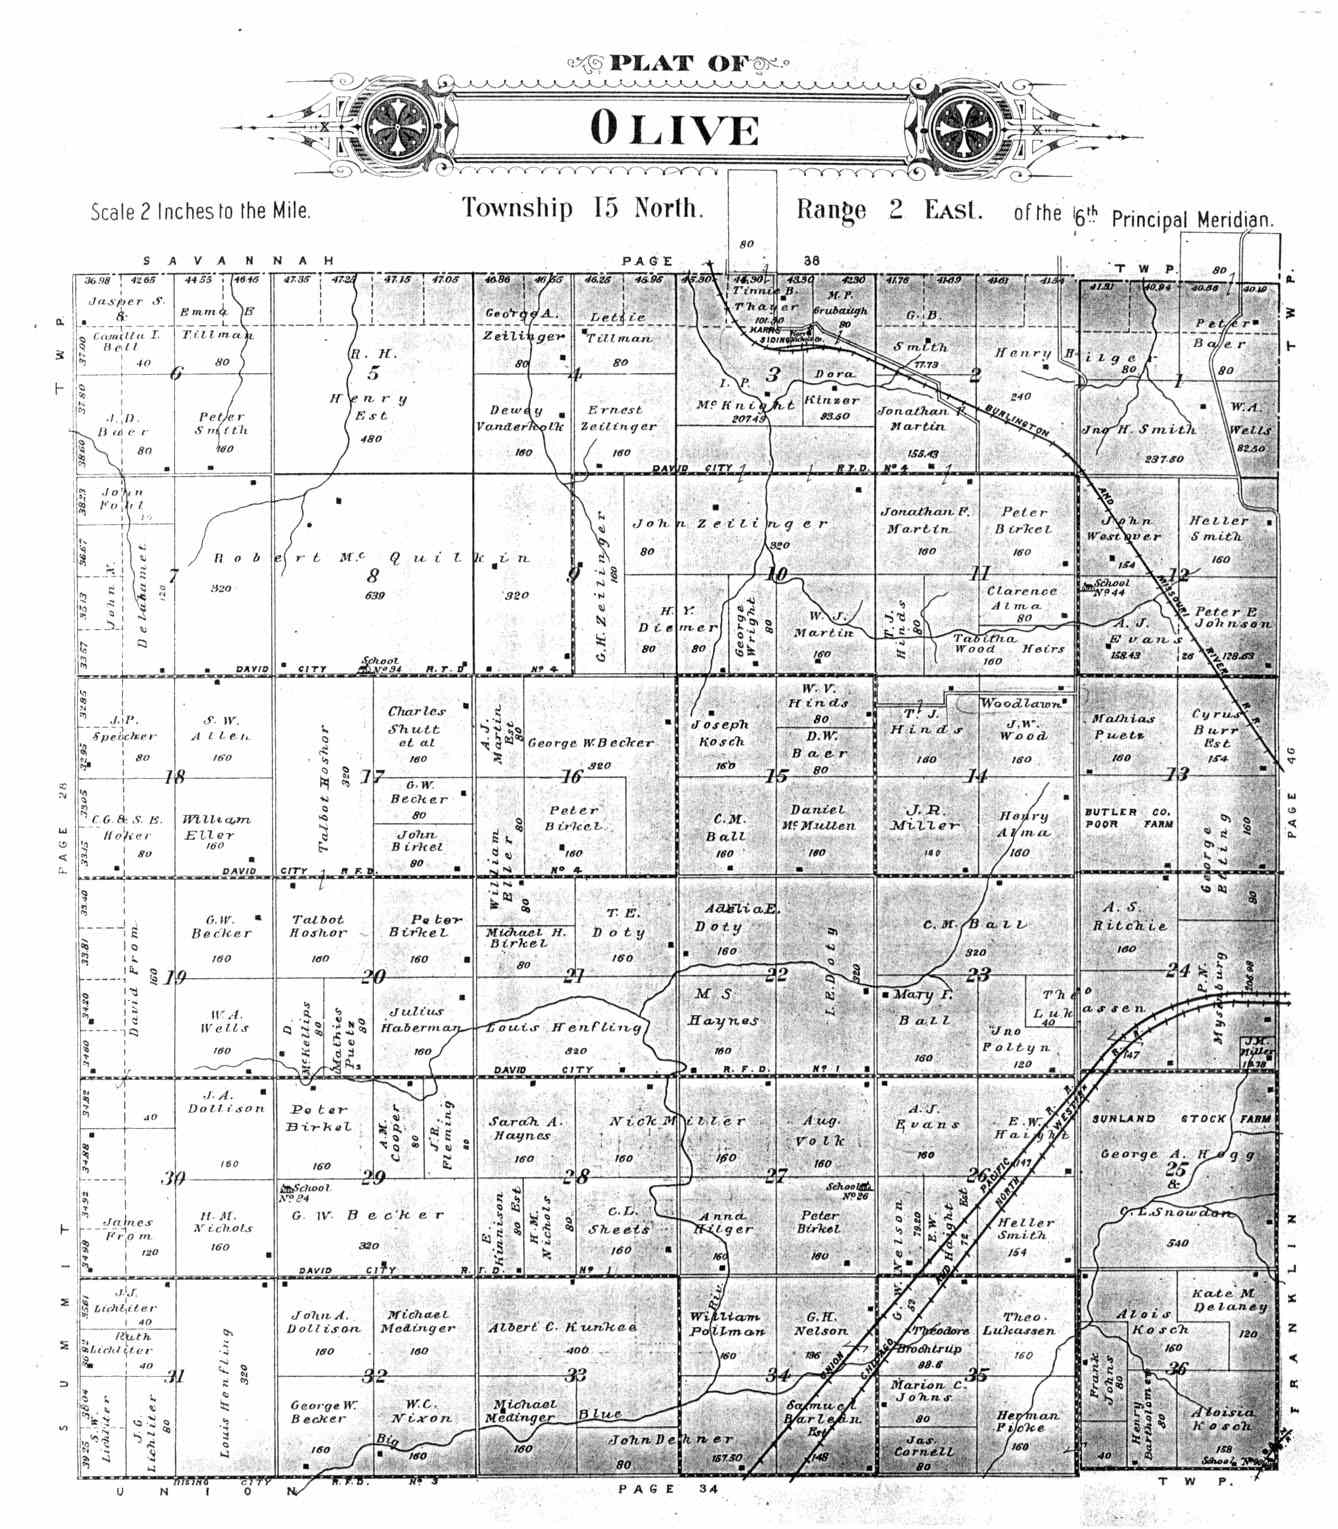 Olive Township Butler County Nebraska Plat Map for 1906